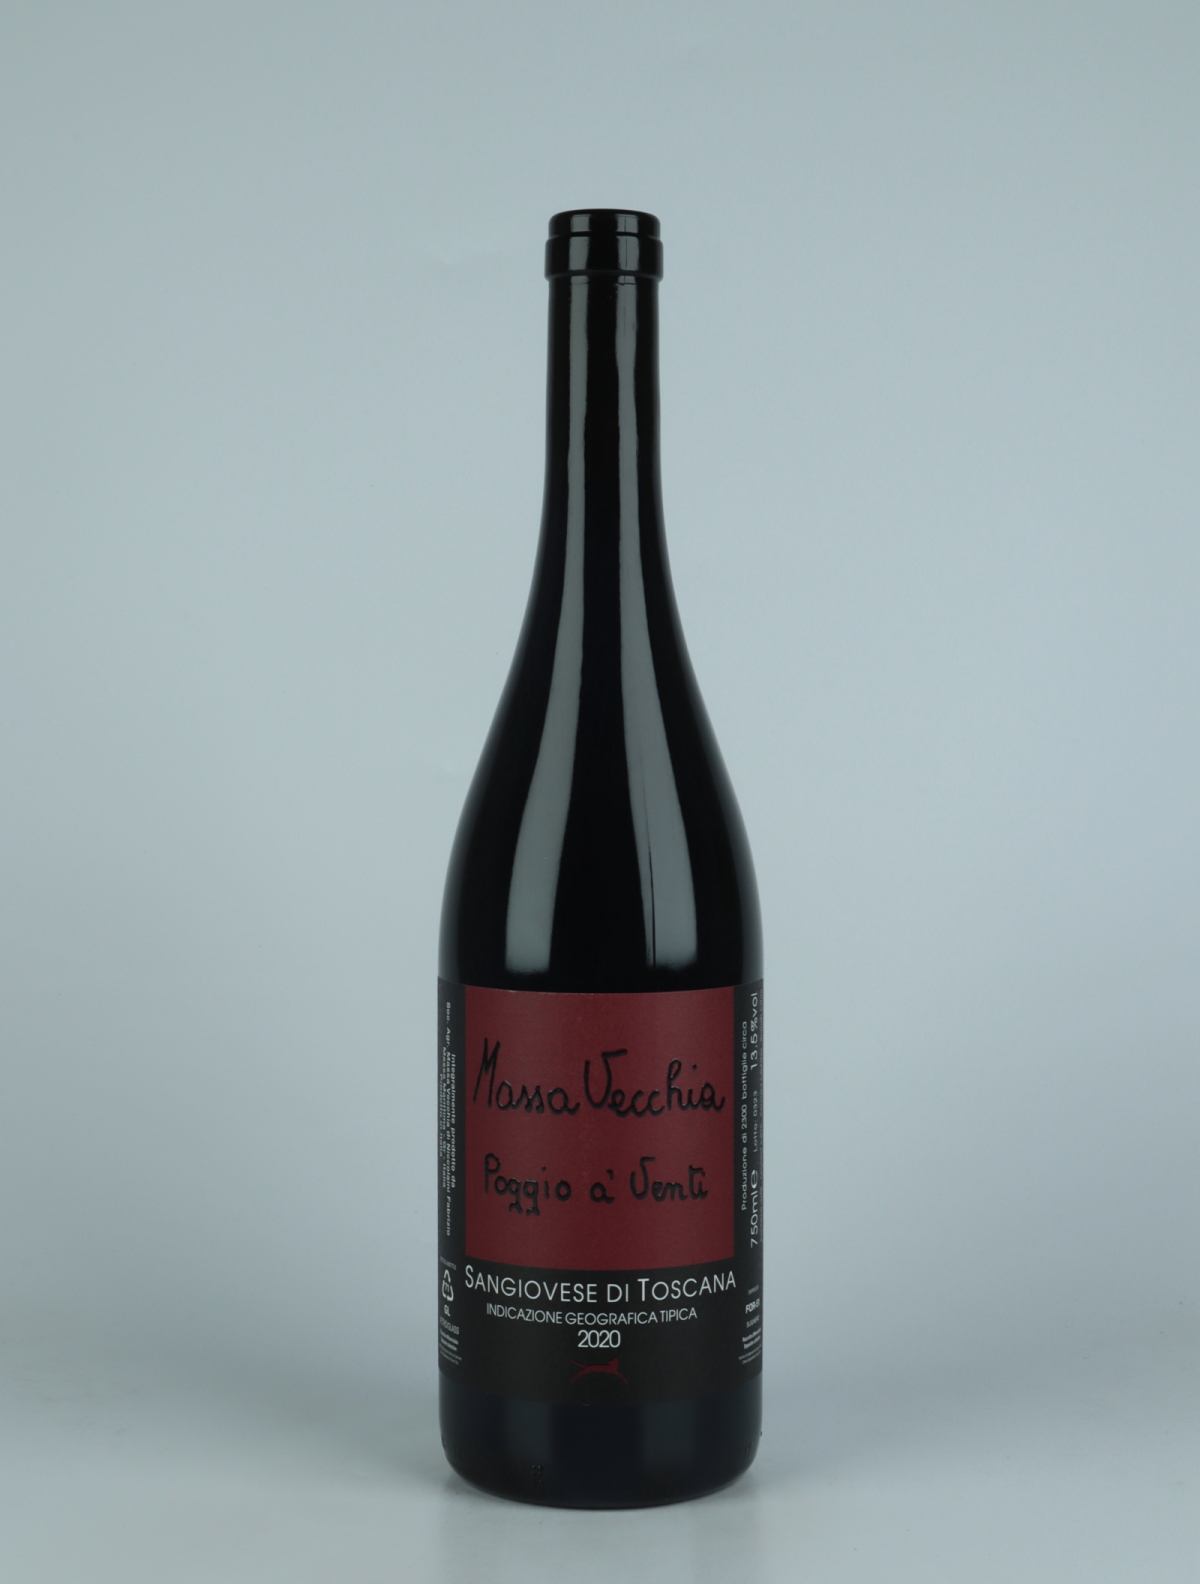 A bottle 2020 Poggio a' Venti Red wine from Massa Vecchia, Tuscany in Italy